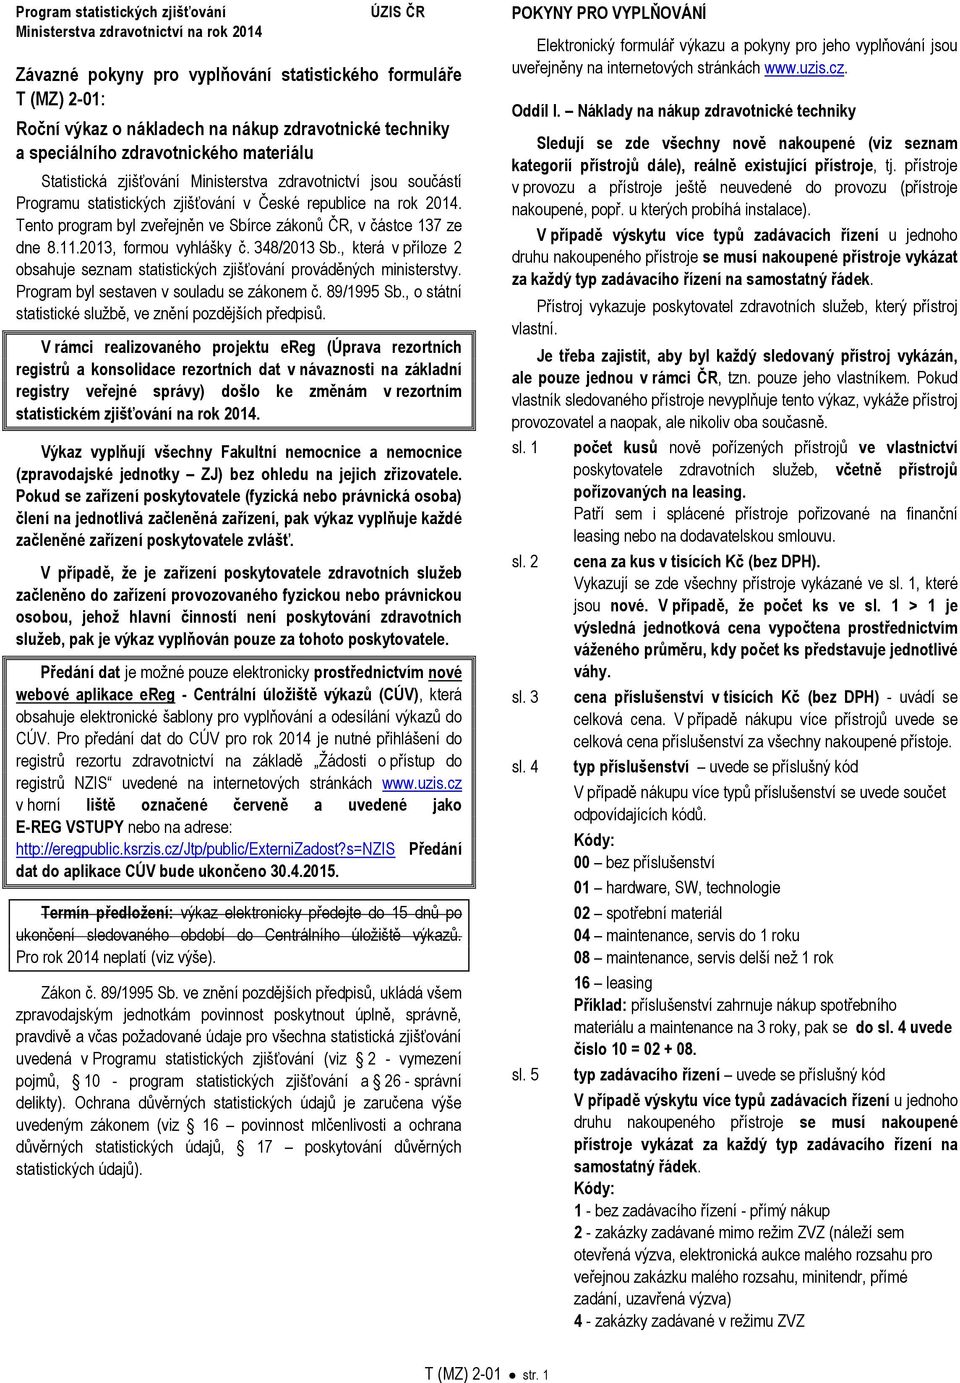 Tento program byl zveřejněn ve Sbírce zákonů ČR, v částce 137 ze dne 8.11.2013, formou vyhlášky č. 348/2013 Sb., která v příloze 2 obsahuje seznam statistických zjišťování prováděných ministerstvy.